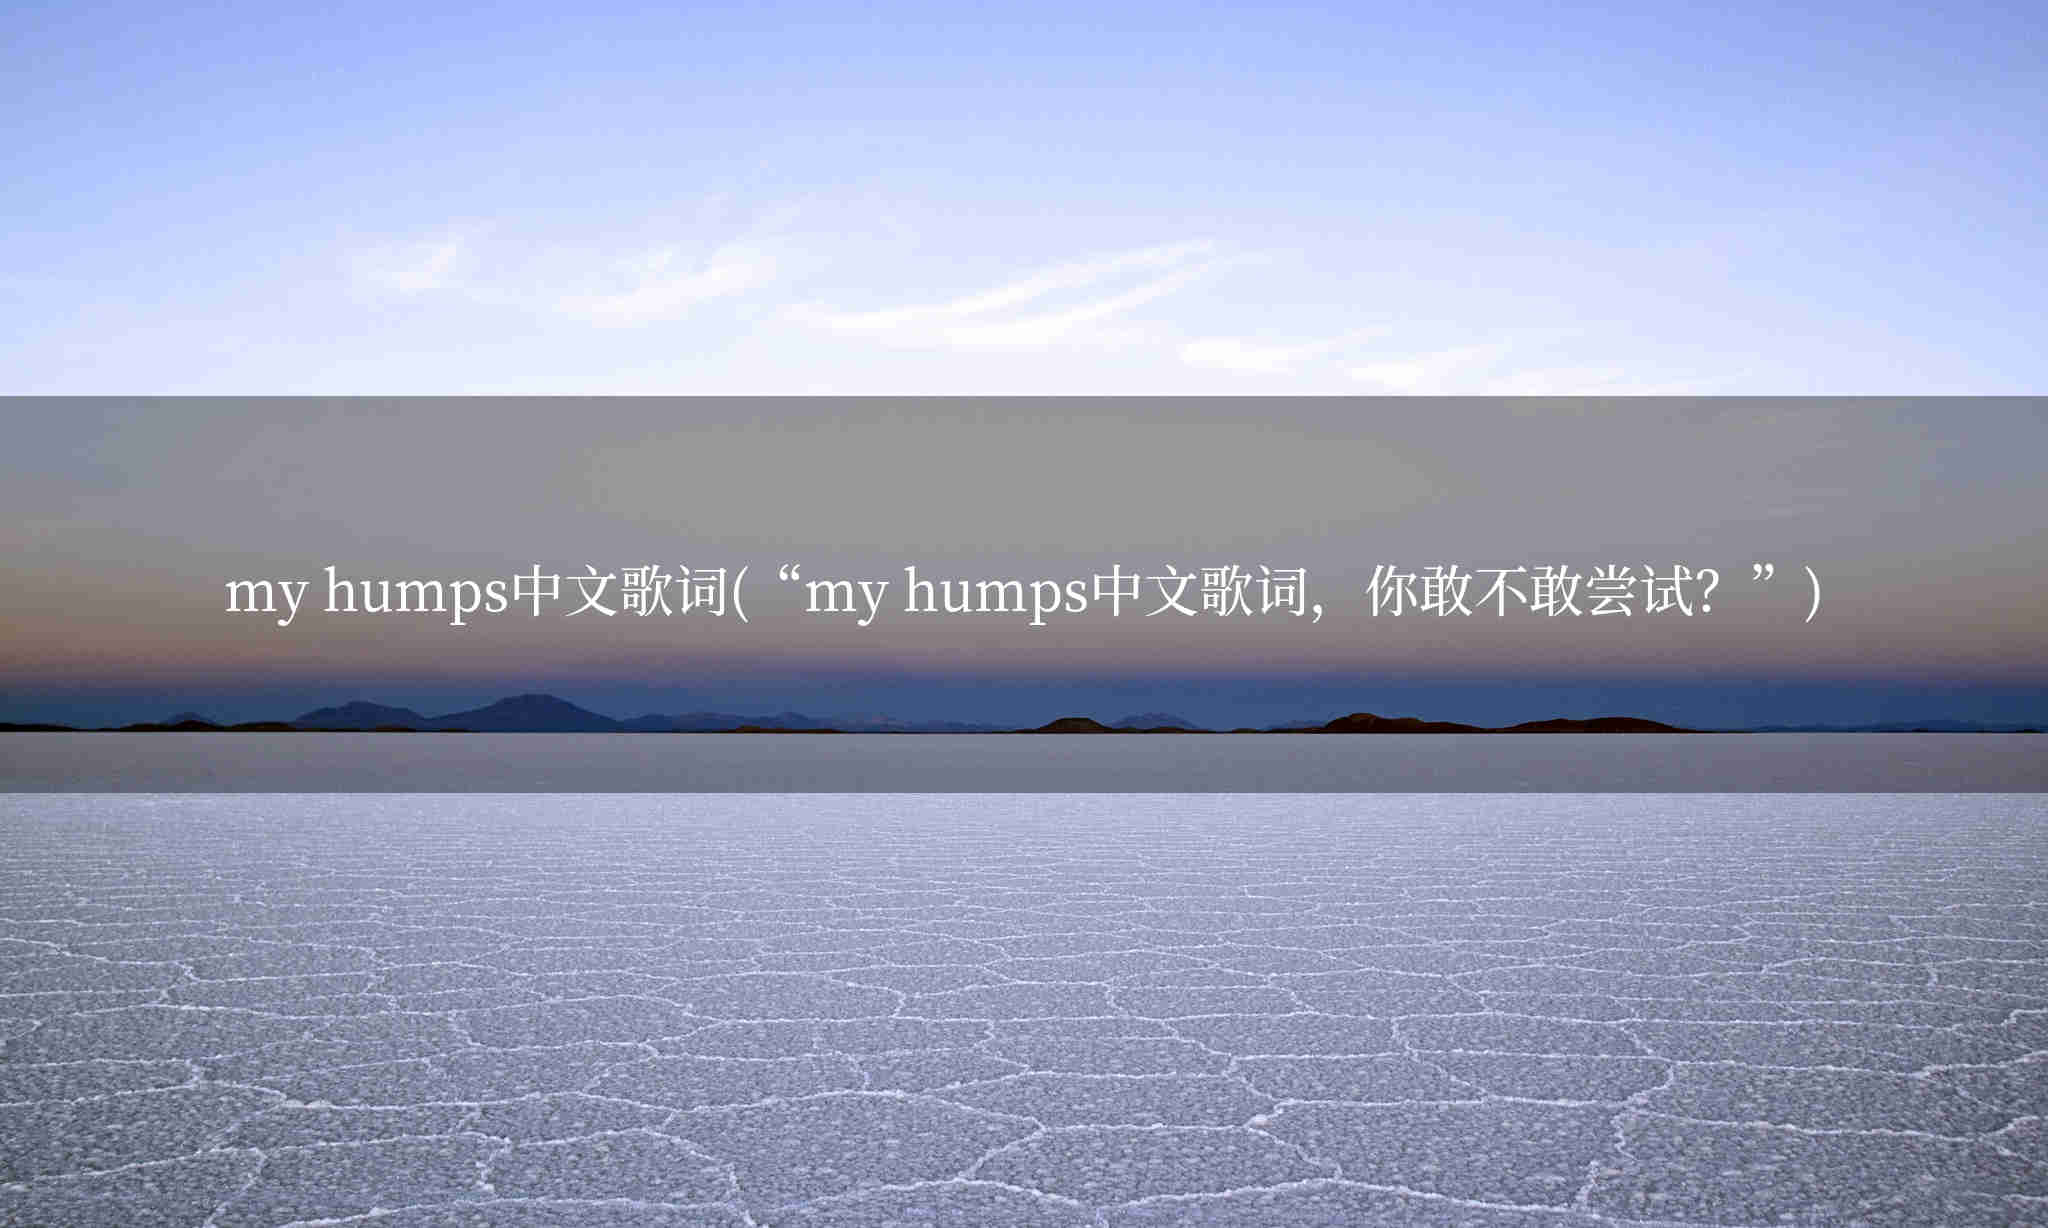 my humps中文歌词(“my humps中文歌词，你敢不敢尝试？”)